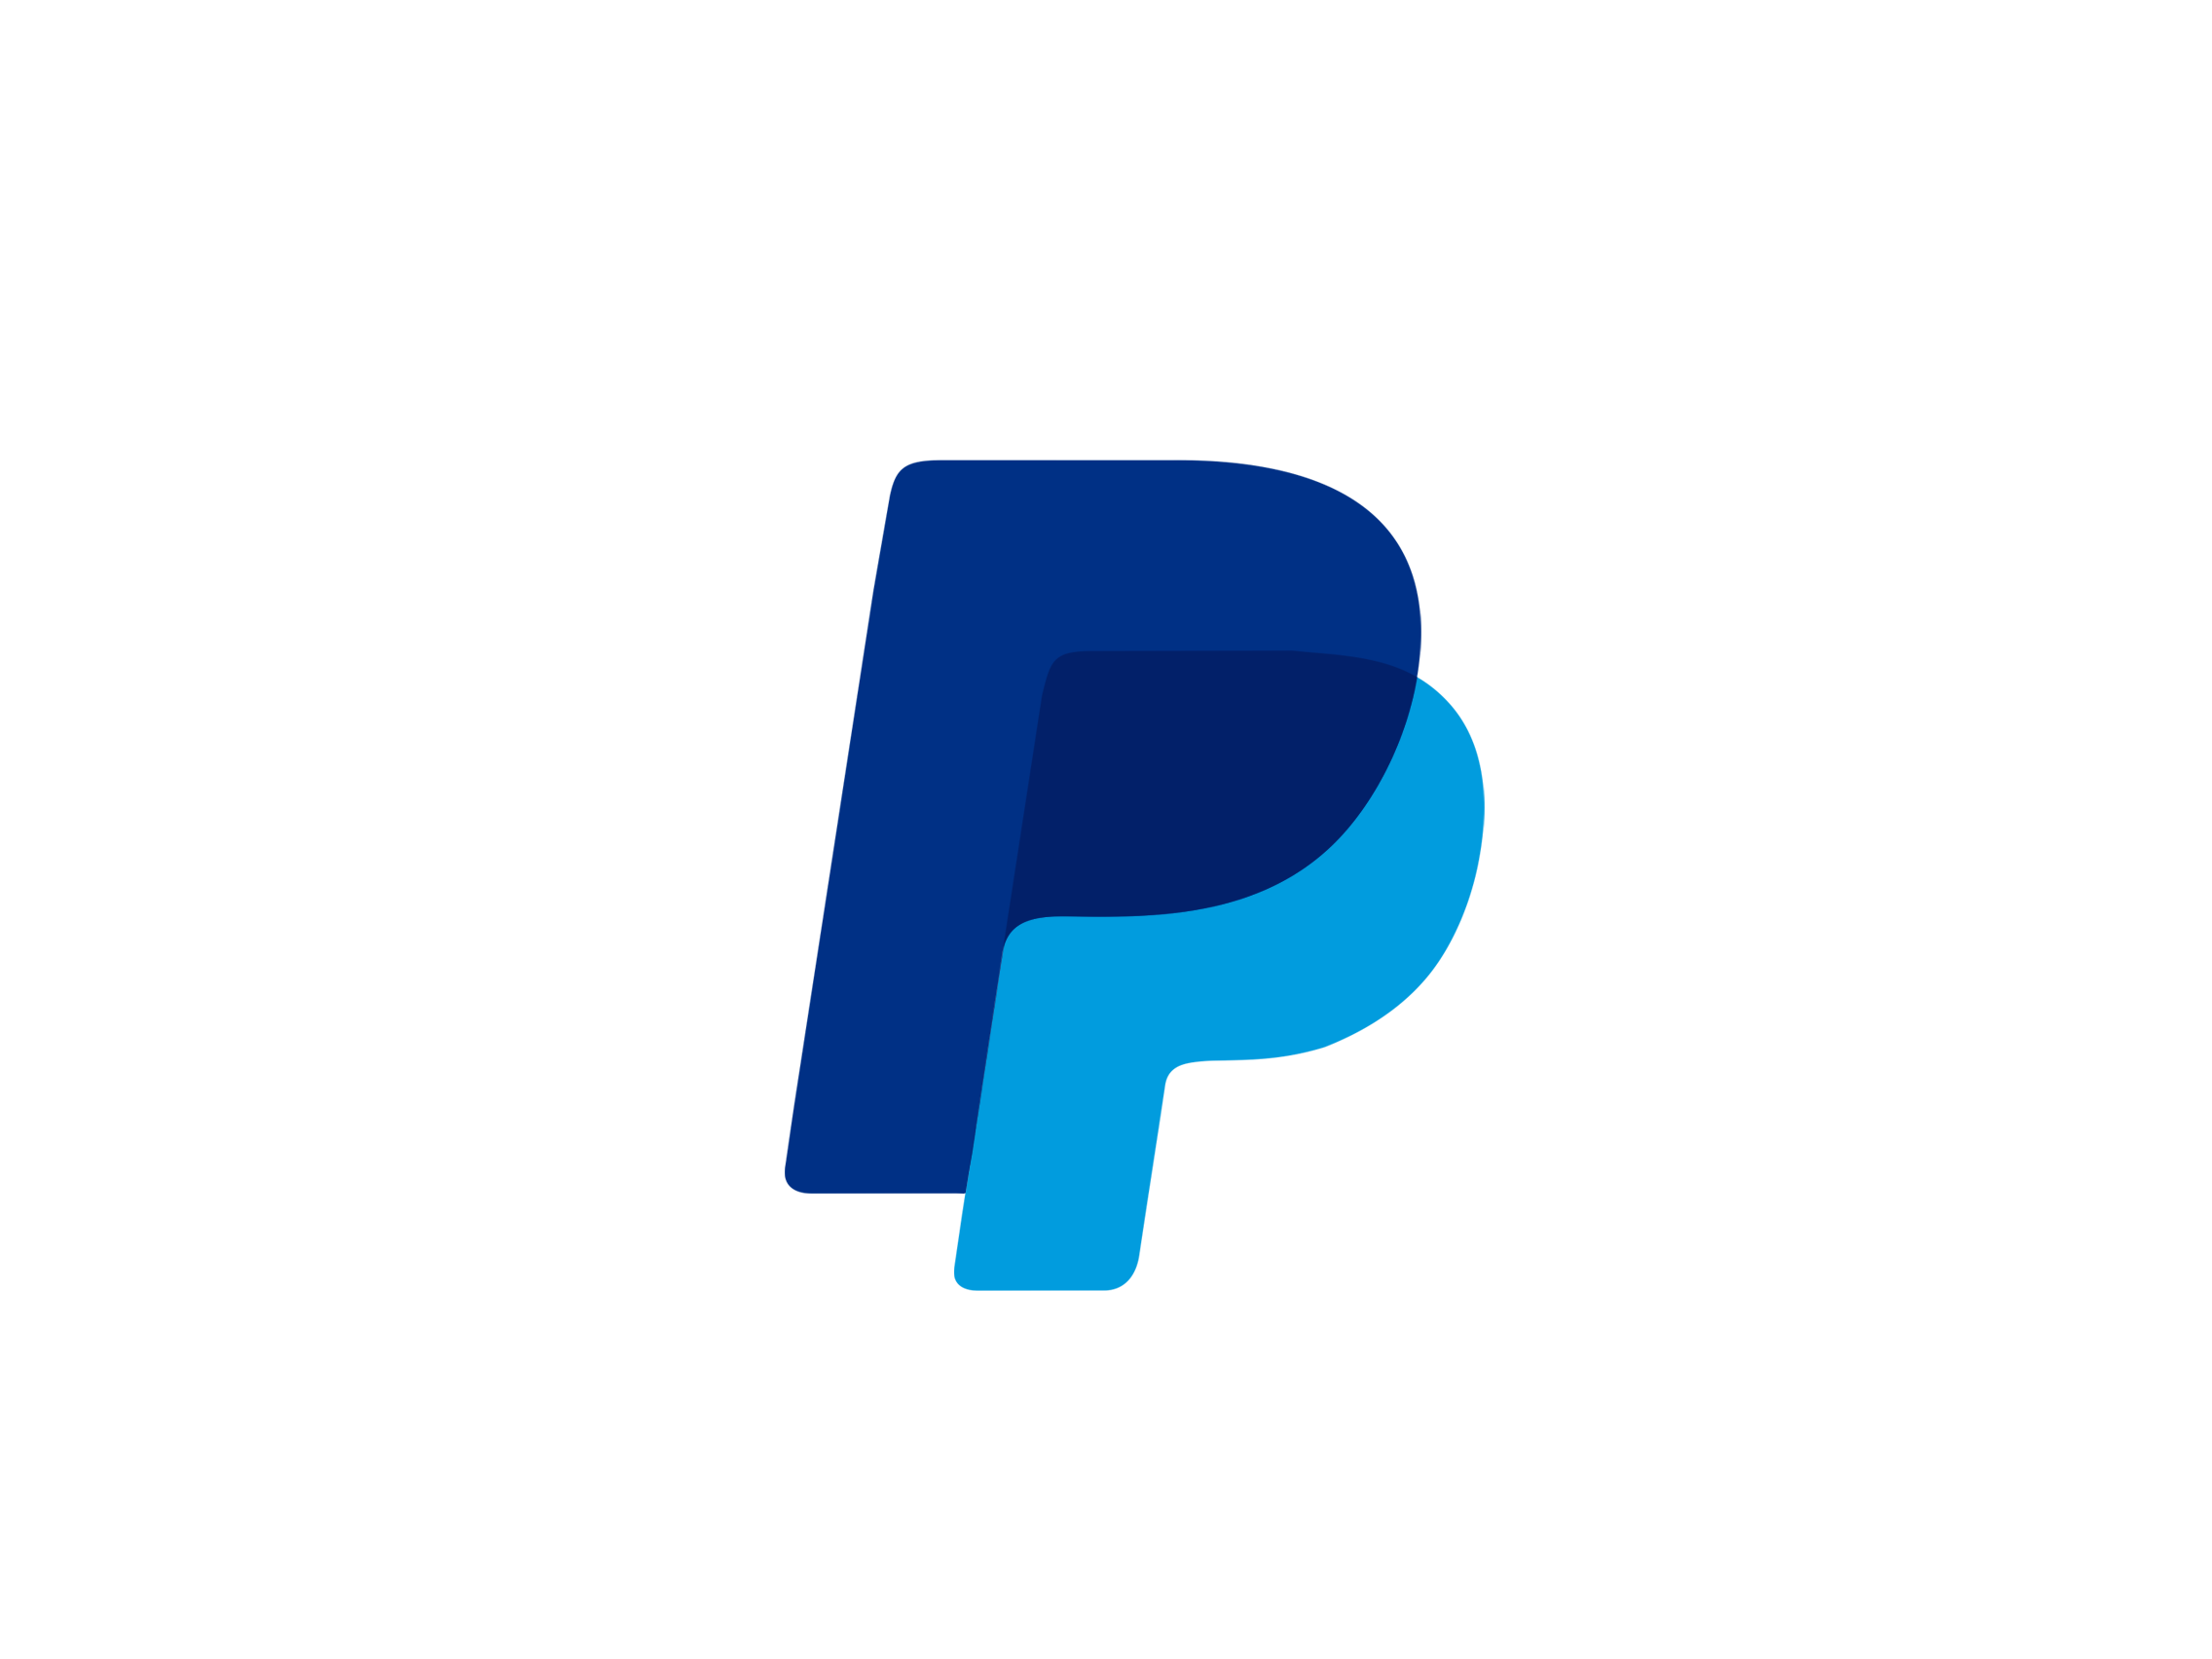 PayPal logo PNG image free Download 